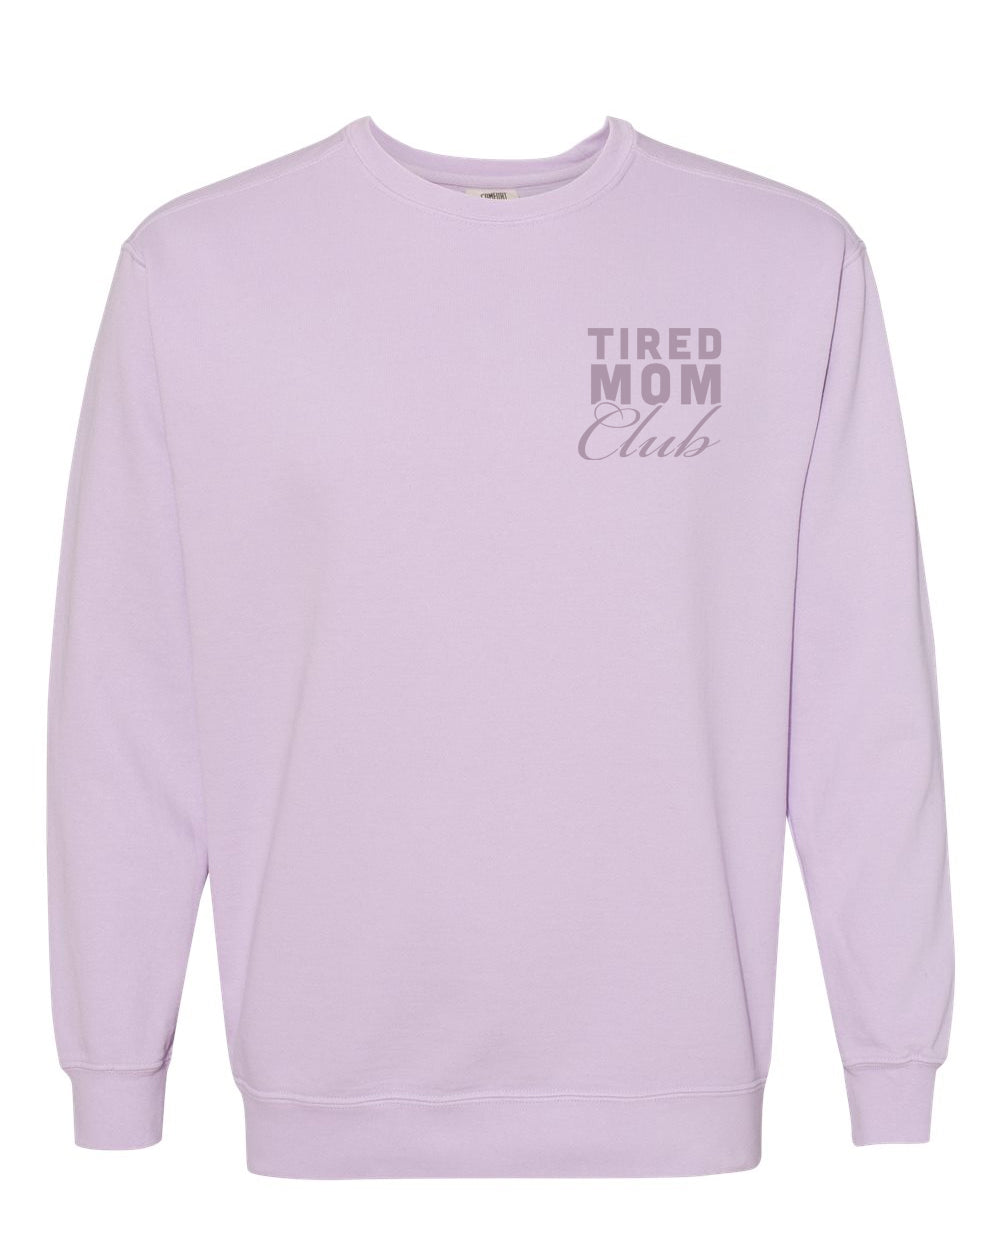 Tired Mom Club Crewneck Sweatshirt - Orchid